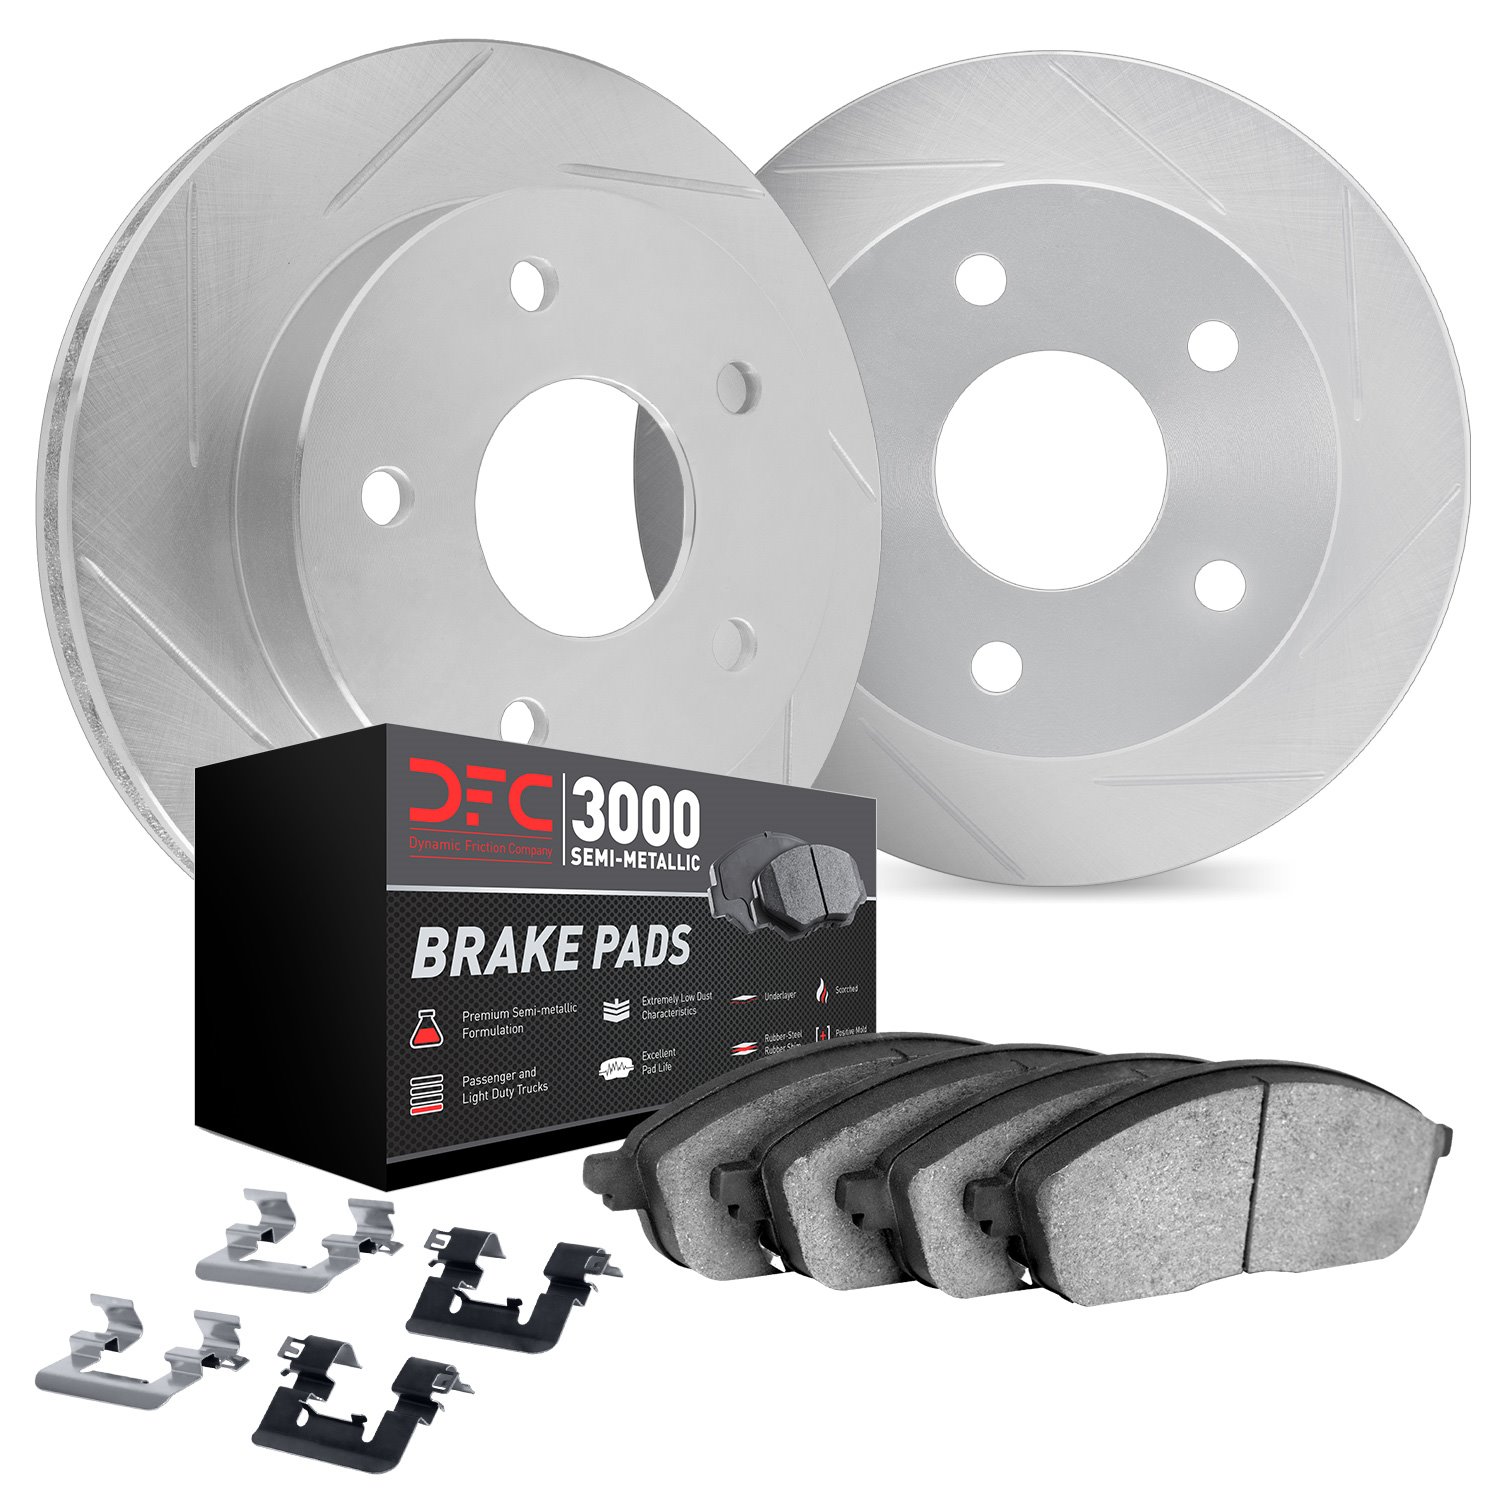 5112-76162 Slotted Brake Rotors with 3000-Series Semi-Metallic Brake Pads Kit & Hardware [Silver], 2008-2021 Lexus/Toyota/Scion,